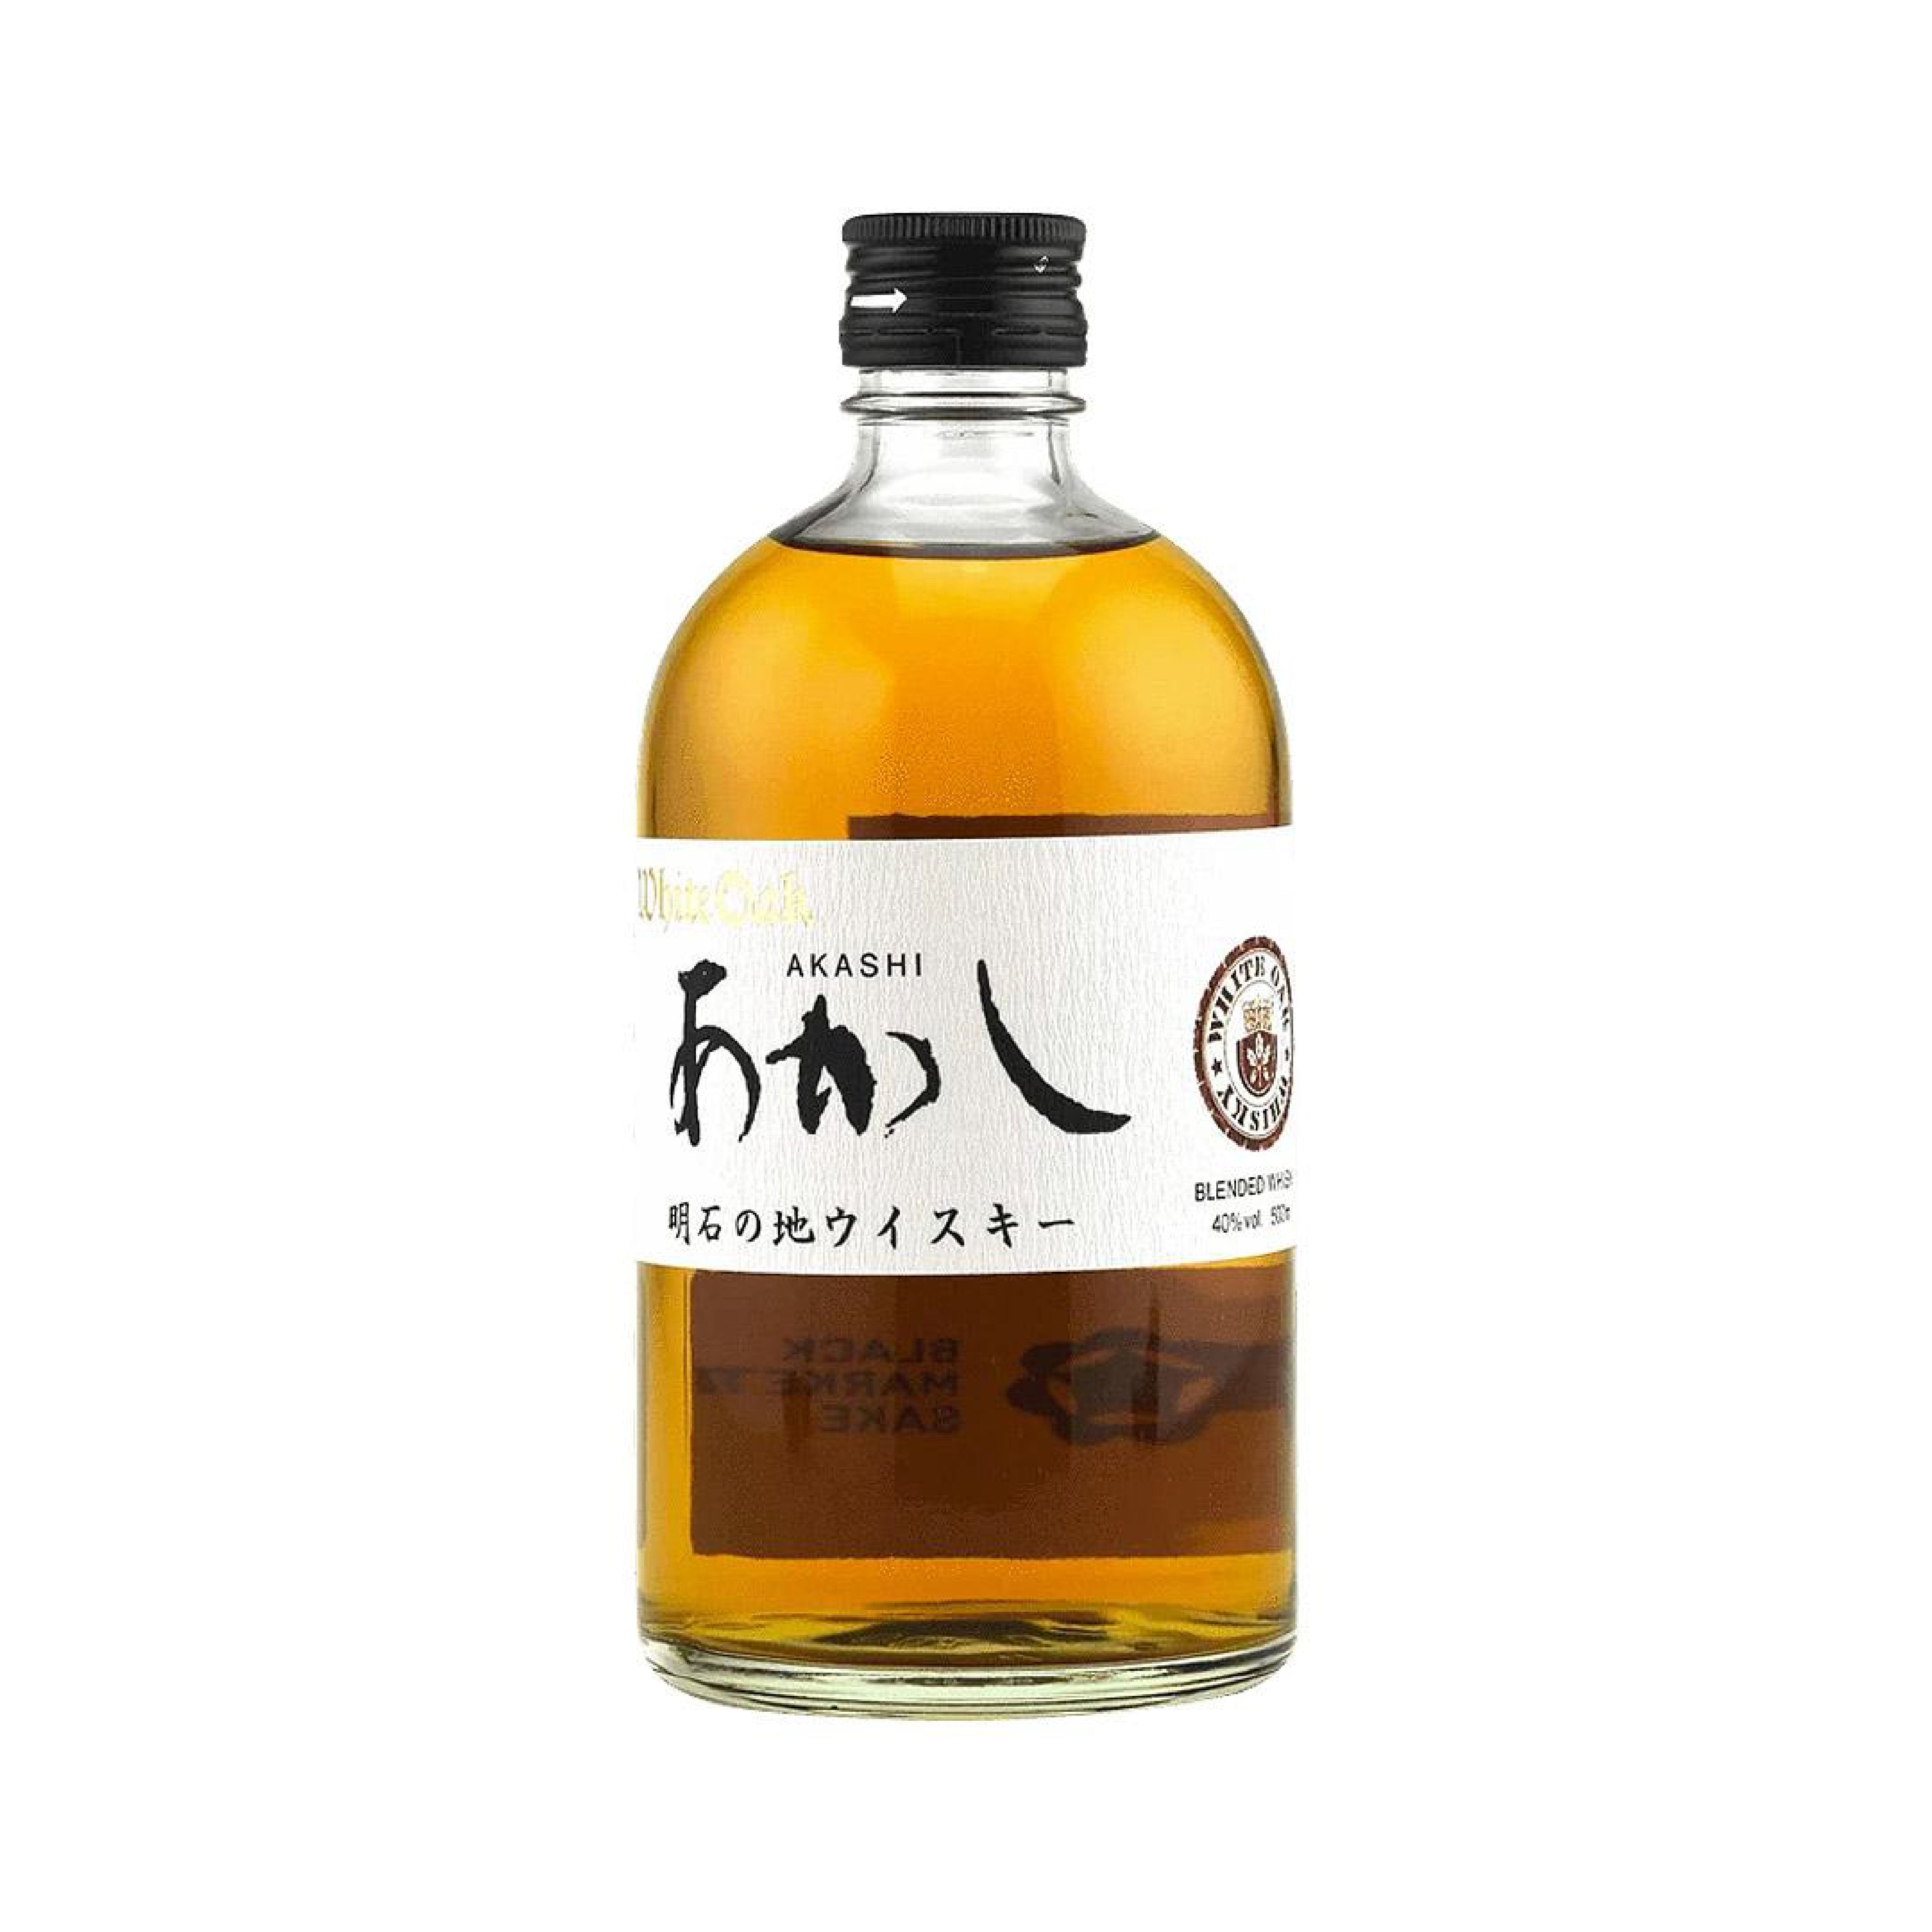 Akashi Black White Oak Blended Whisky 500ml - S Liquor